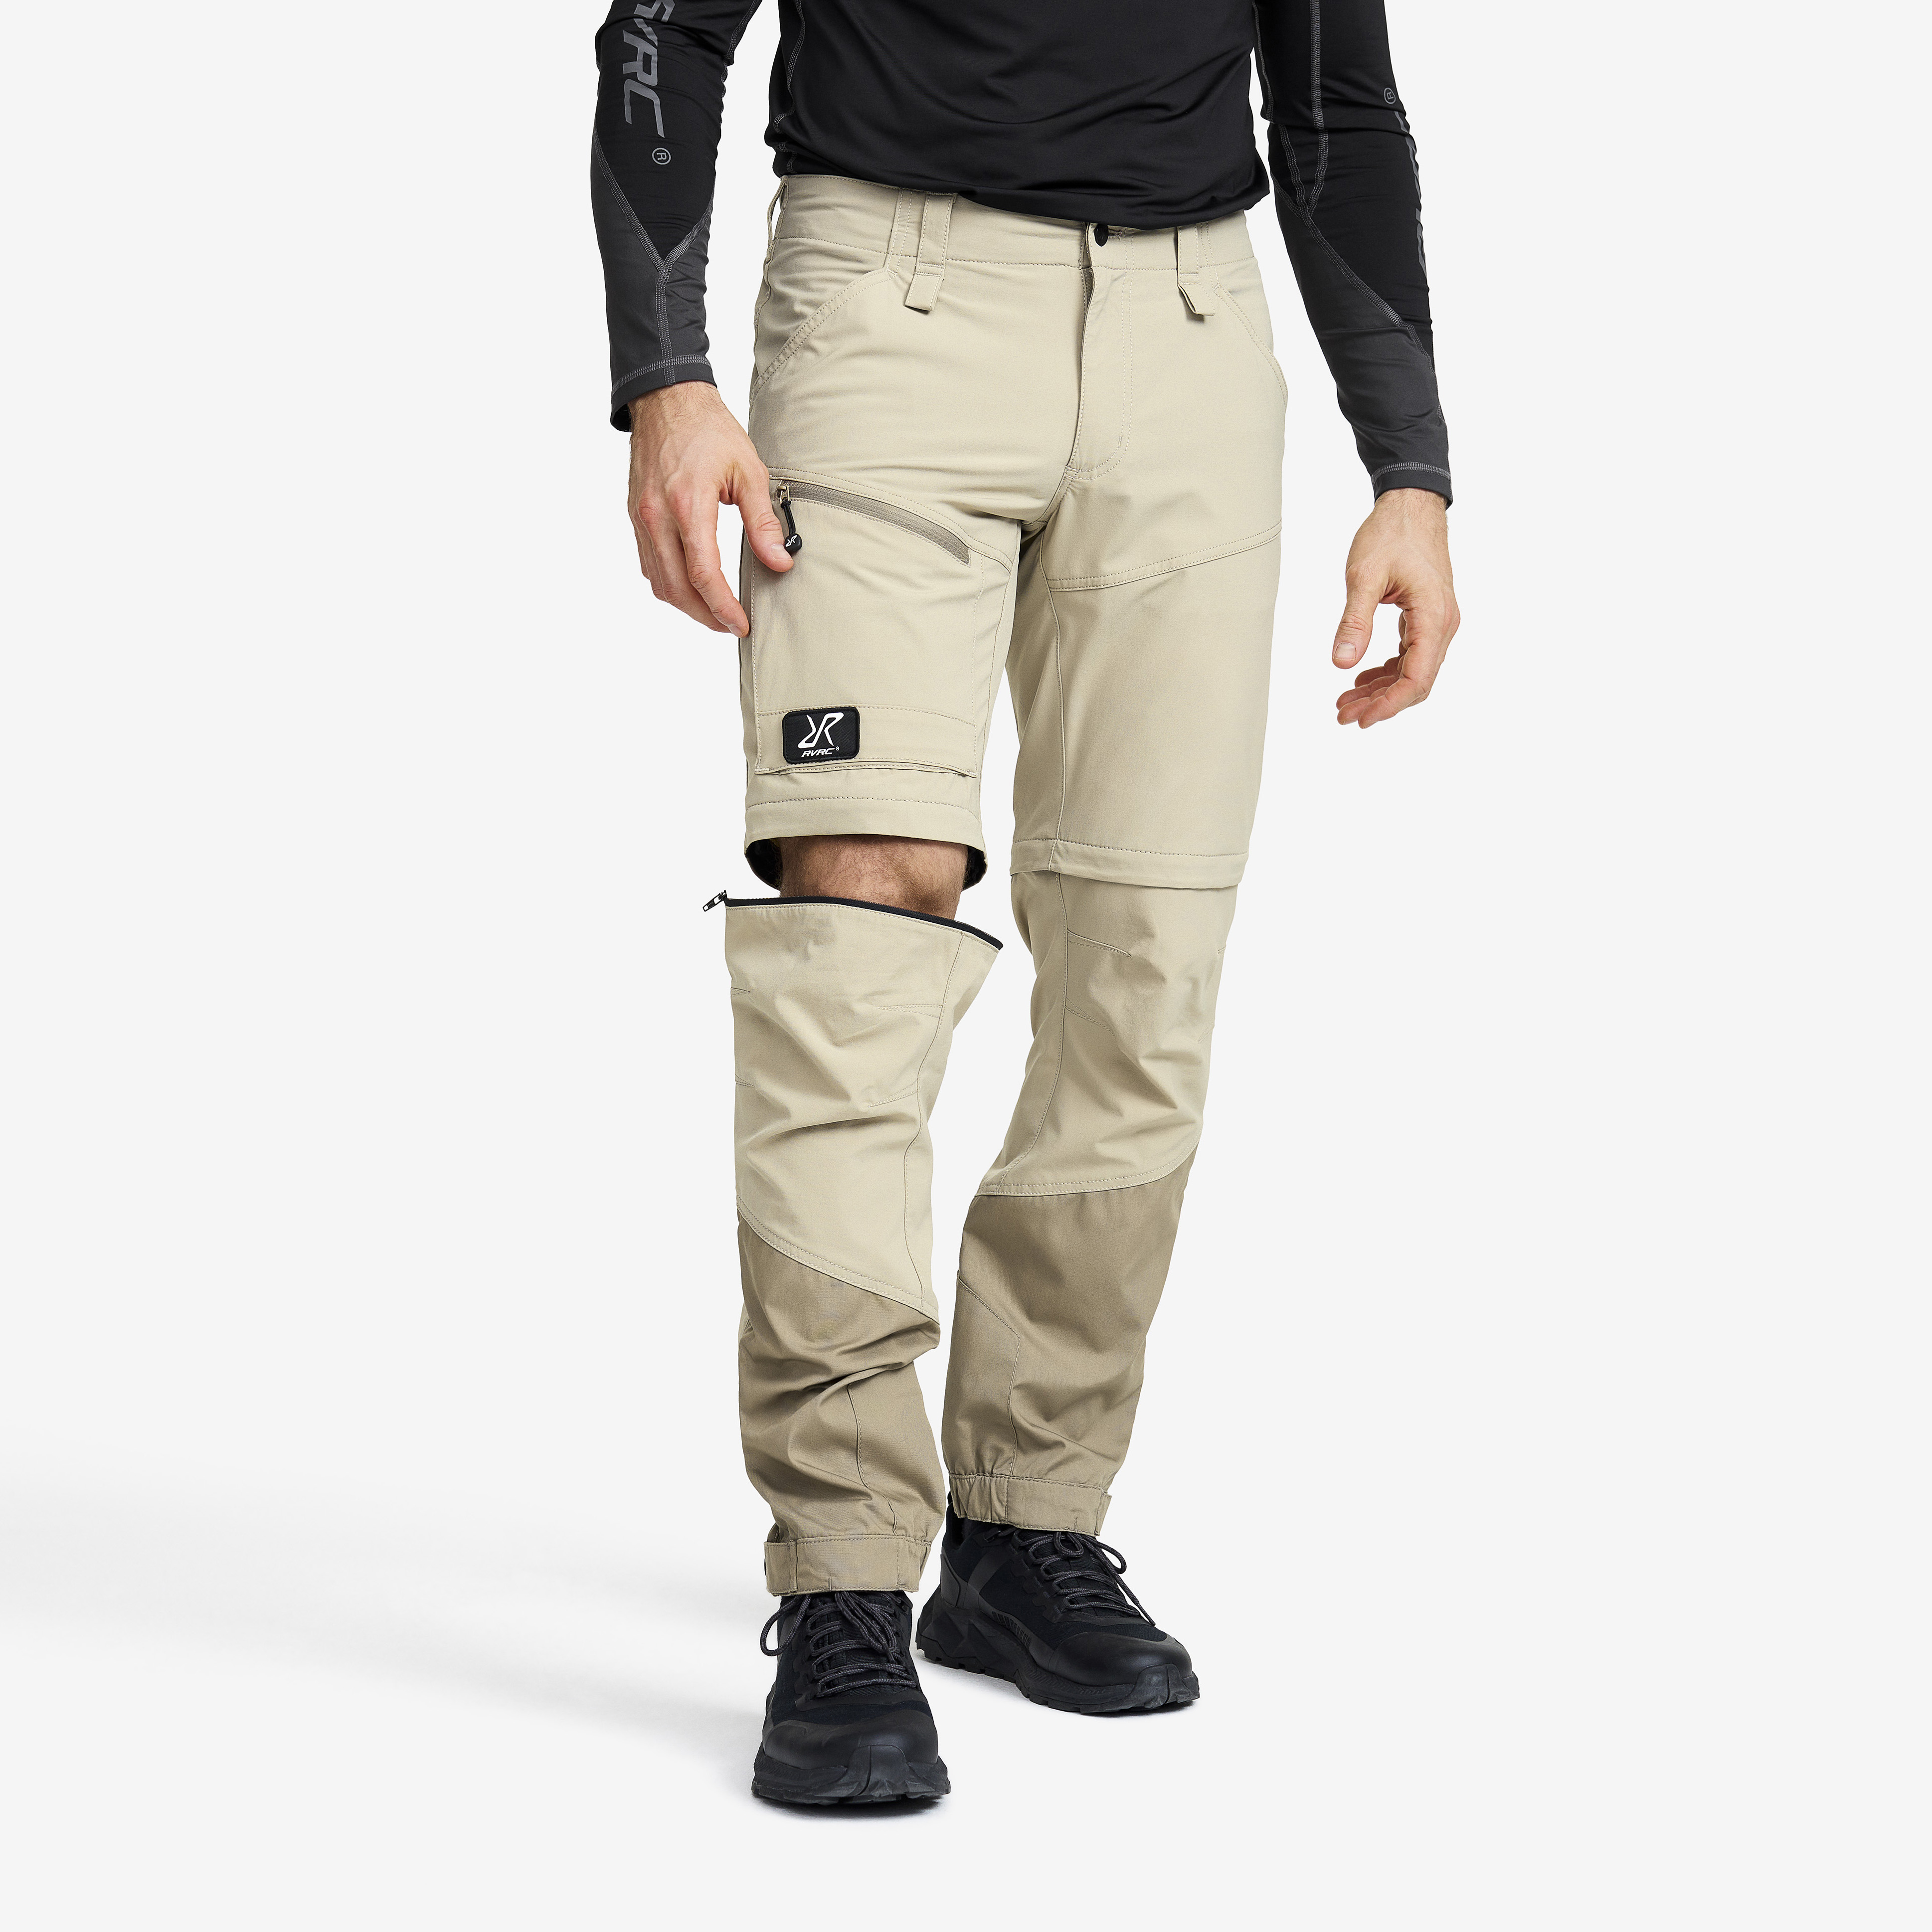 Range Pro Zip-off Pants Aluminium/Brindle Hombres